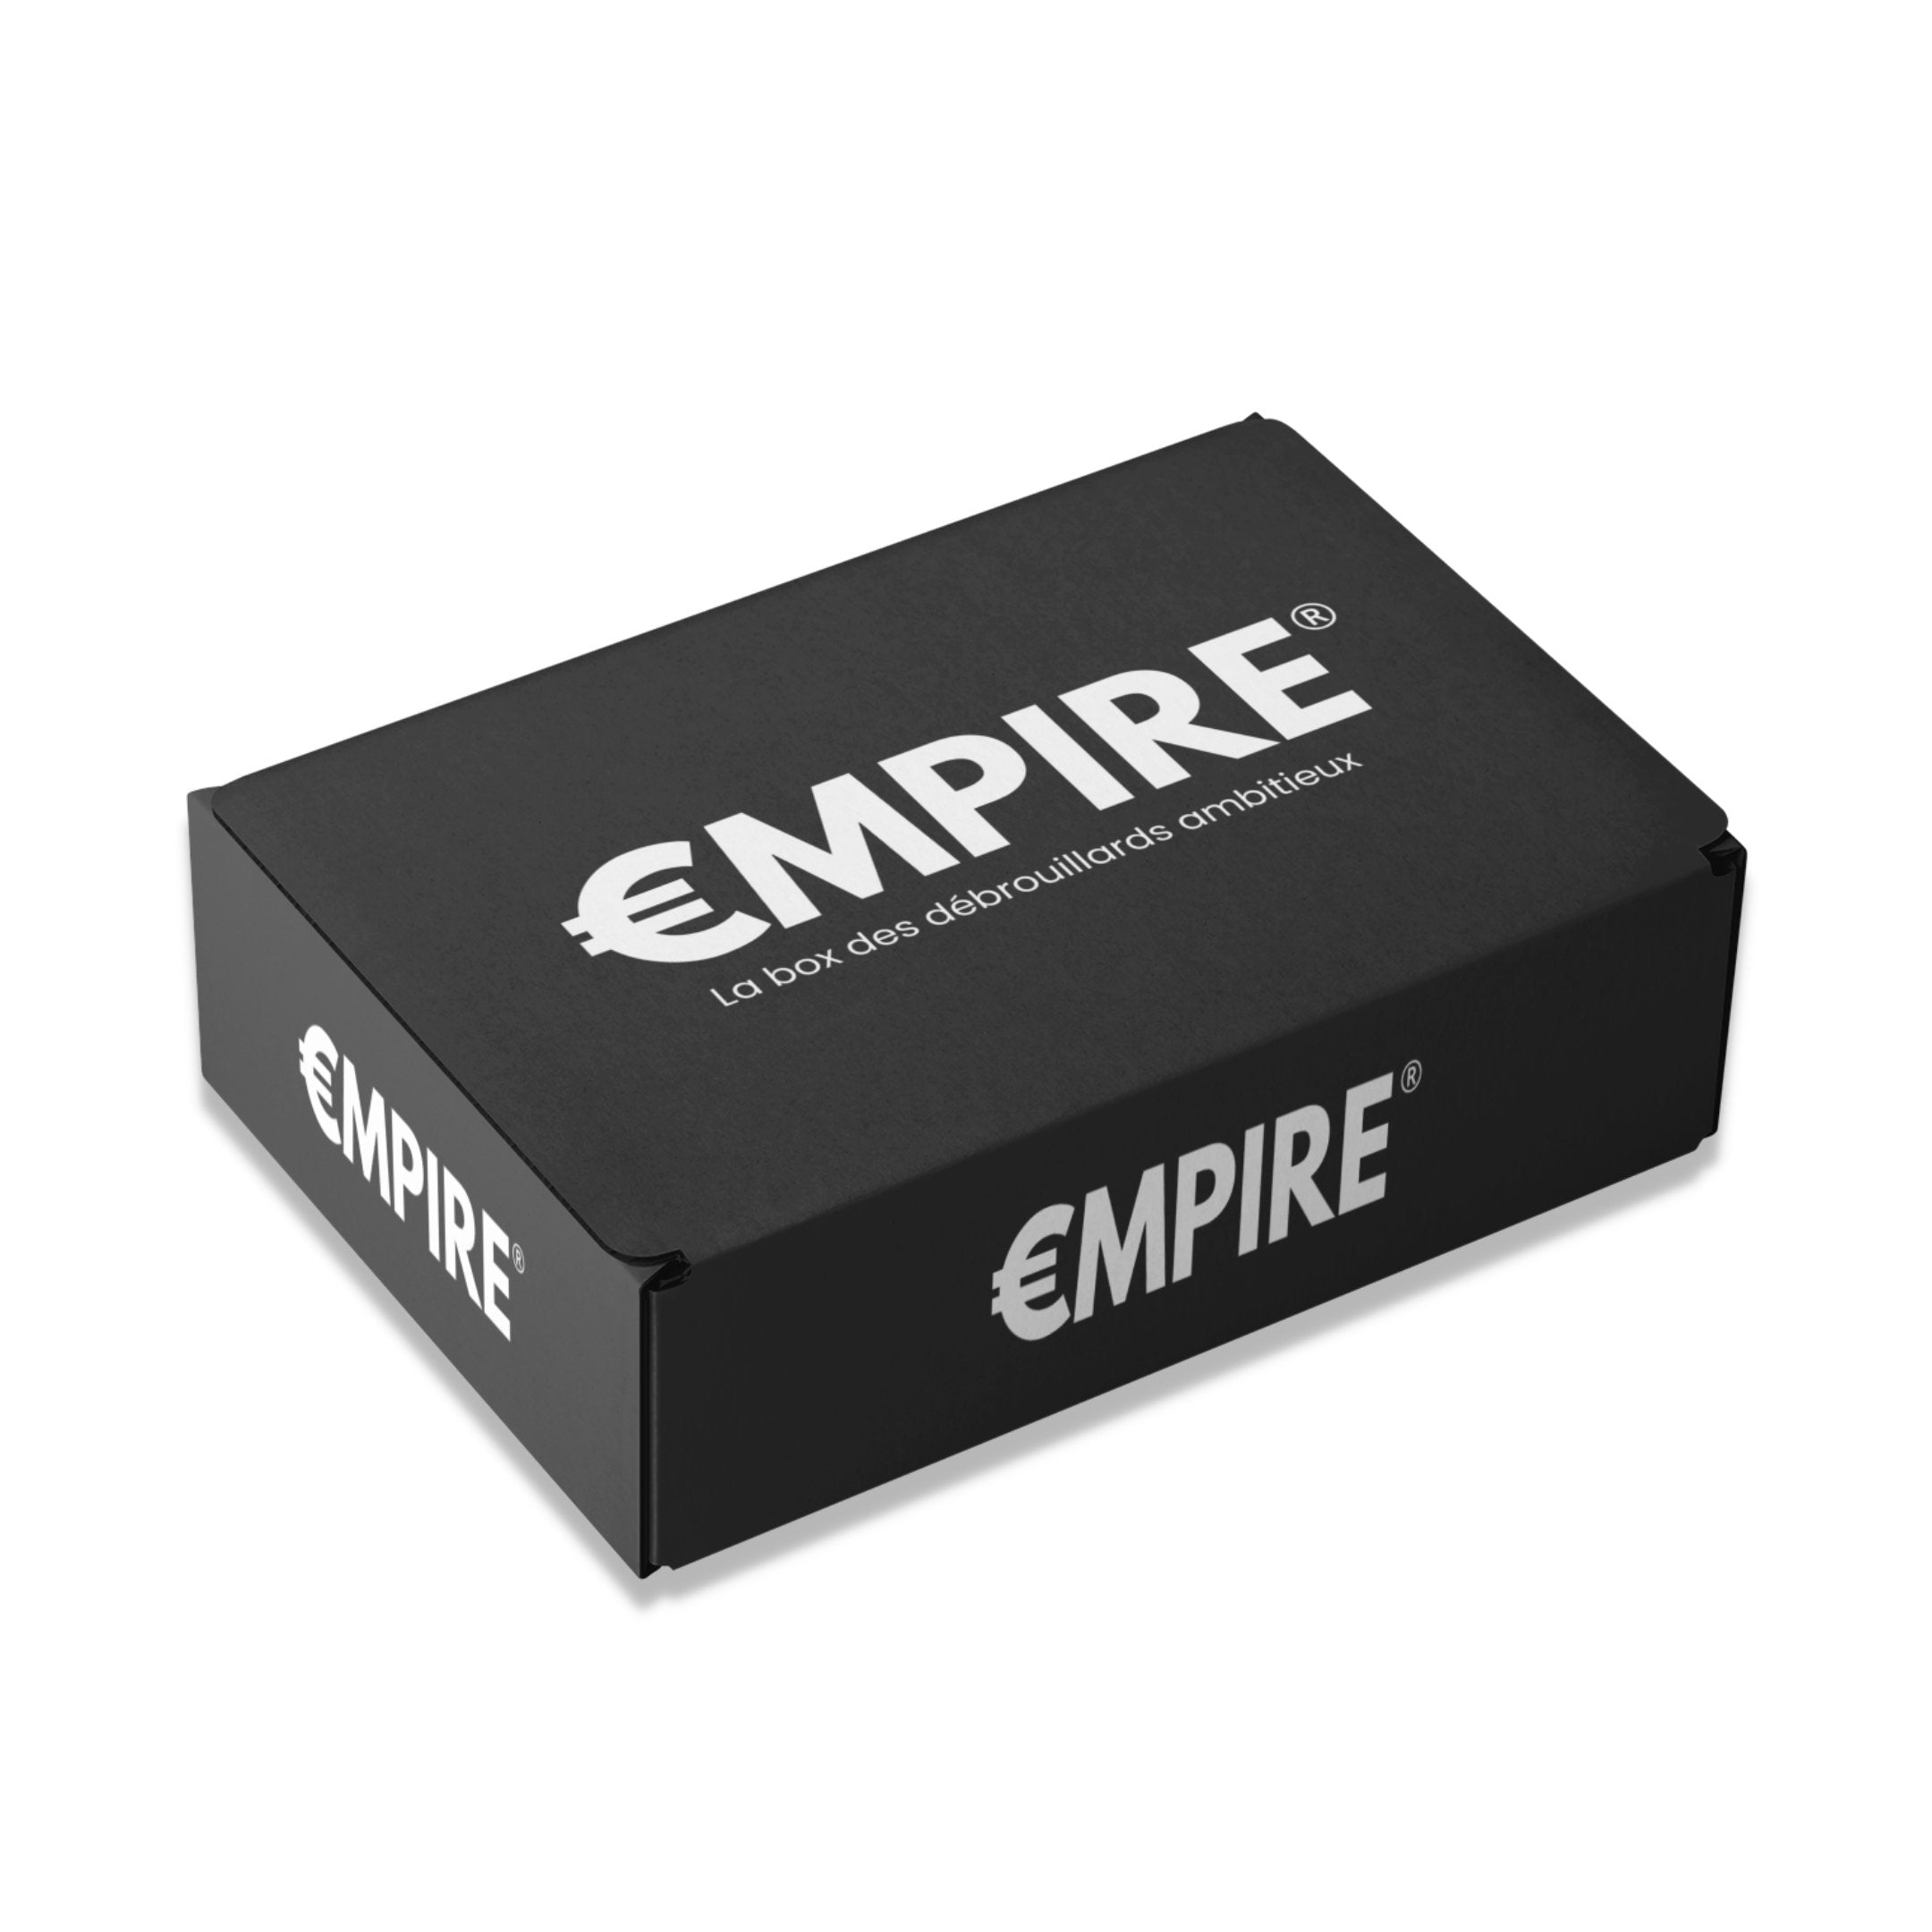 €MPIRE BOX - Digital